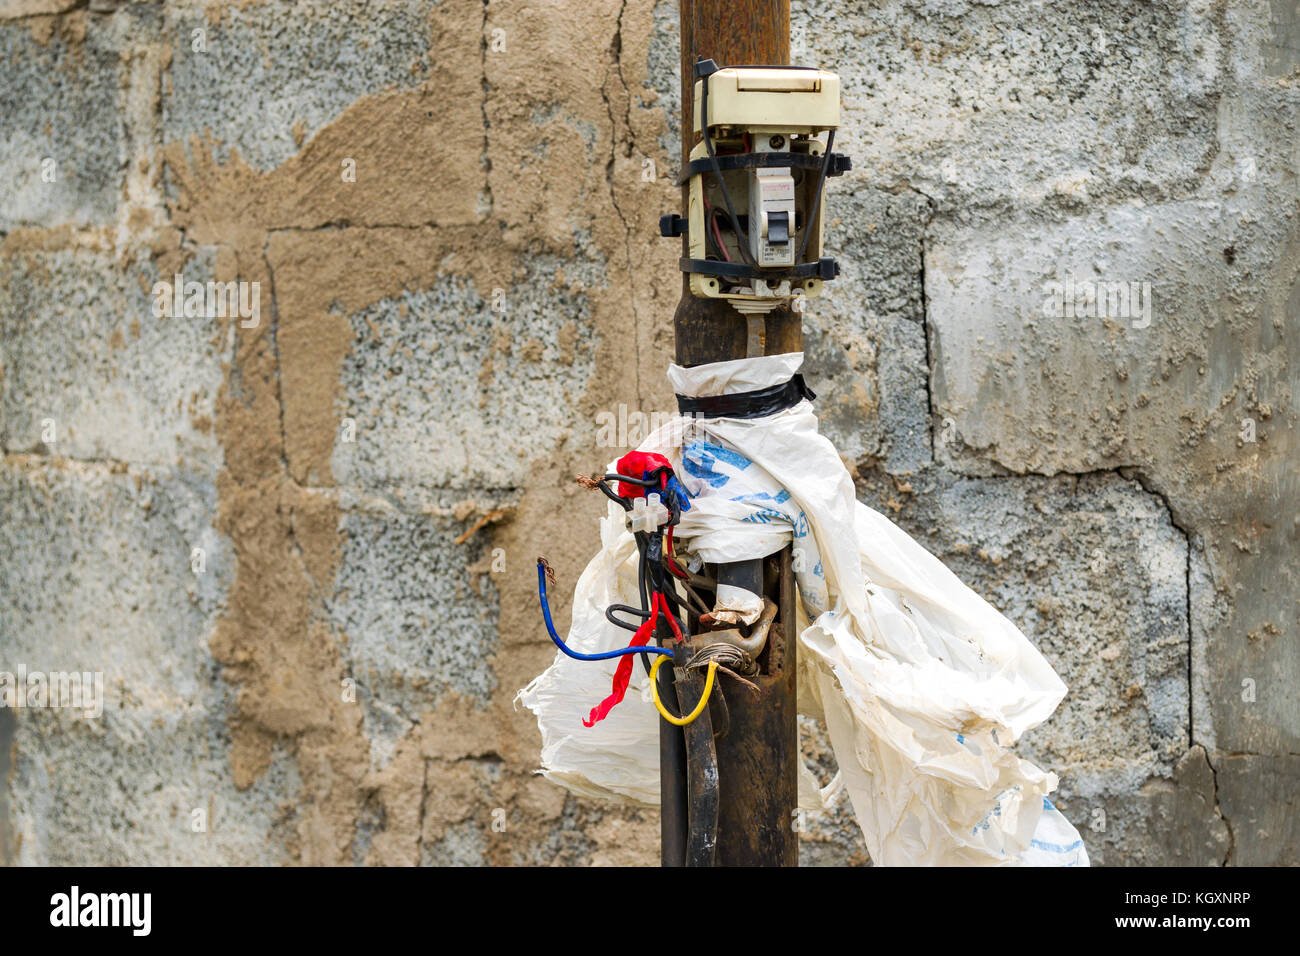 Freiliegende planlos elektrische Kabel stellt eine potenzielle Gefahr für Menschen, Kenia, Ostafrika Stockfoto